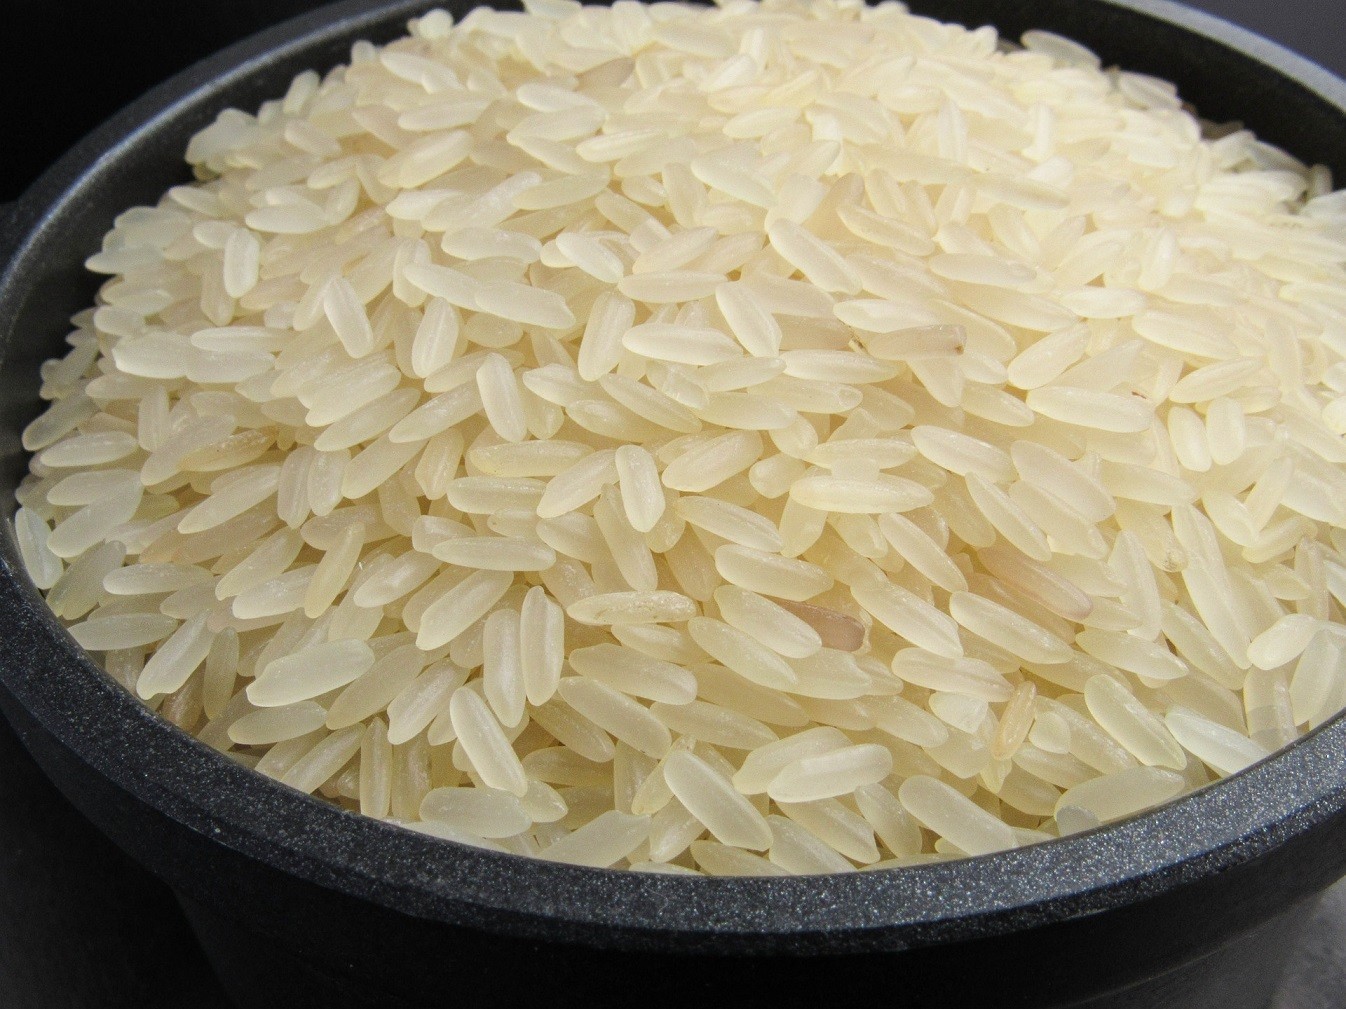 Δέλτα Αξιού: Εκεί όπου παράγεται το ελληνικό ρύζι και εξάγεται παντού